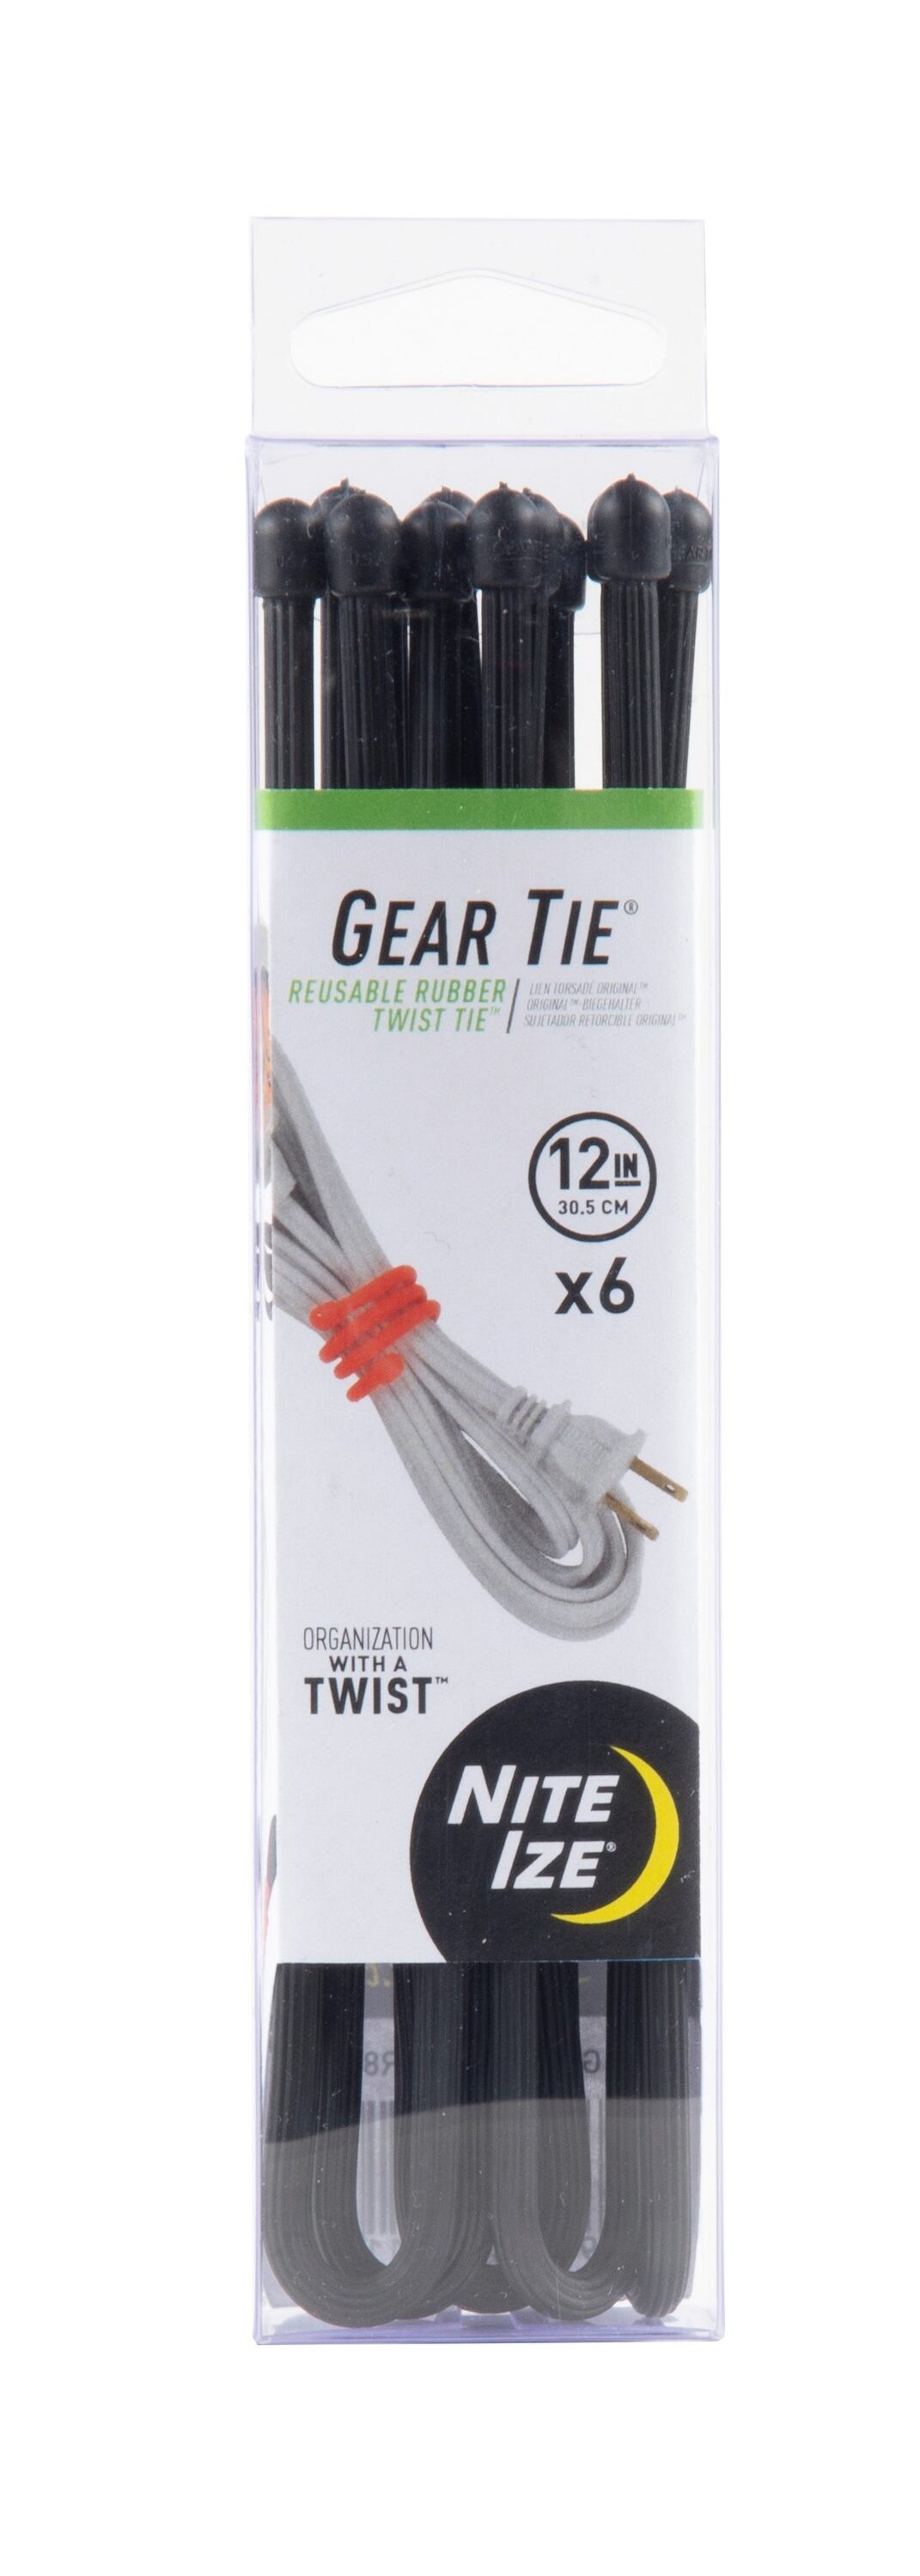 6-Pack of 12 Nite Ize Gear Tie ProPack 6" Black Twist Ties Waterproof Durable